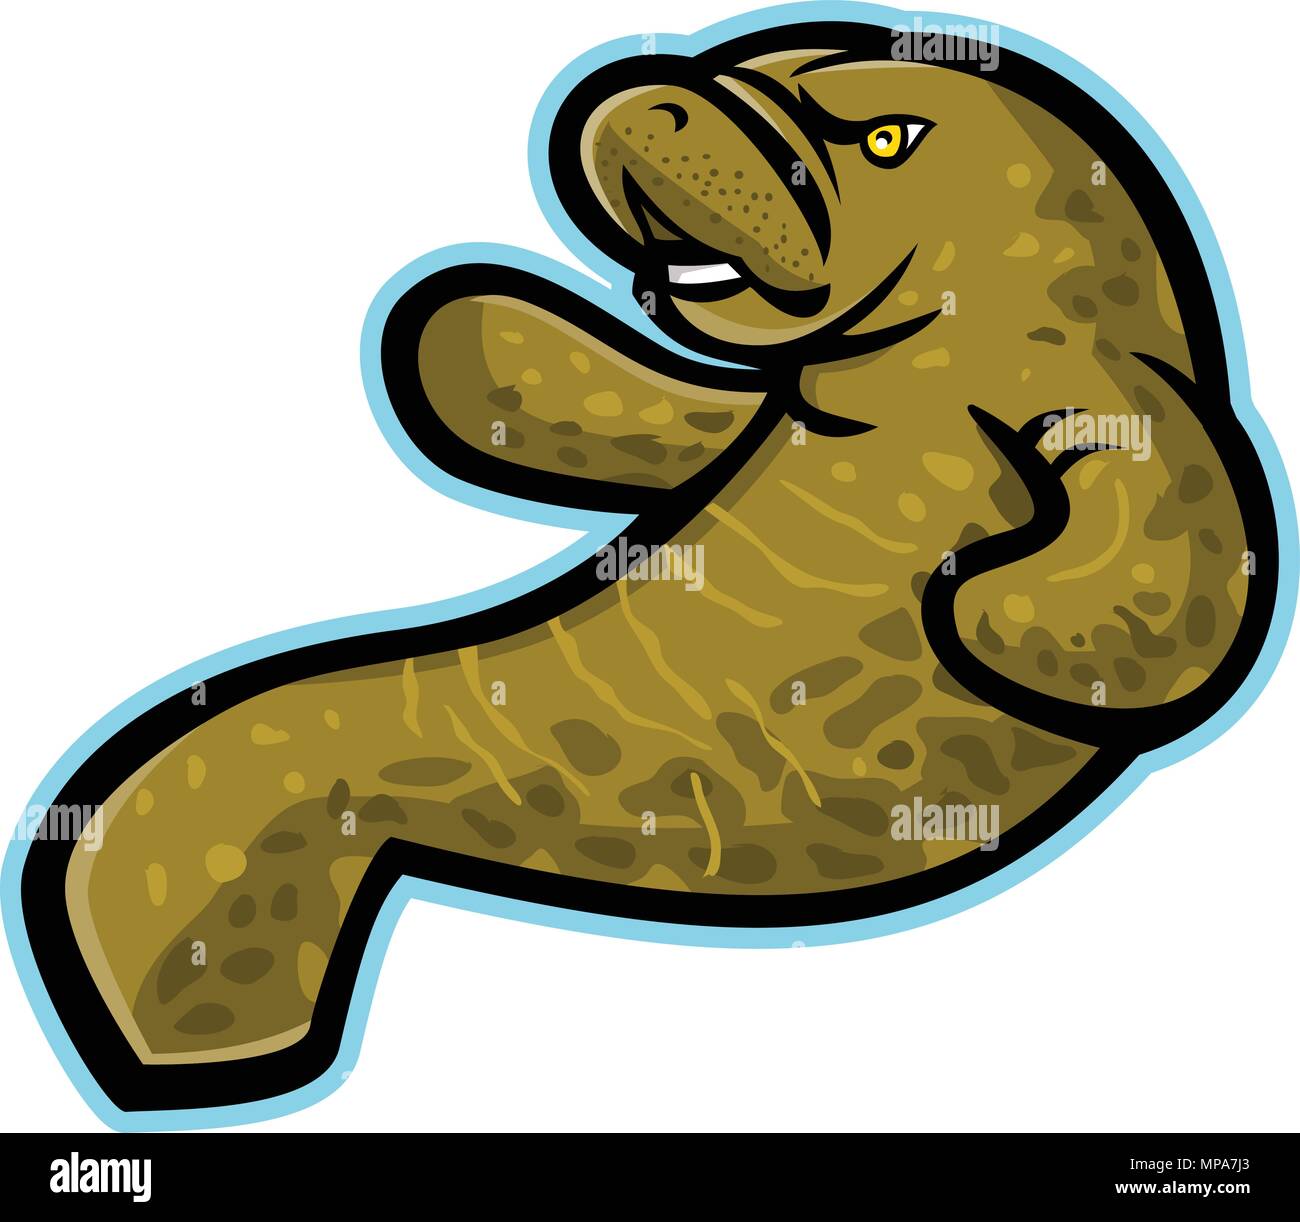 Icône mascotte illustration d'un lamantin en colère, le dugong ou sea cow, une grande et entièrement aquatique, principalement des mammifères marins herbivores vu de côté sur des Illustration de Vecteur